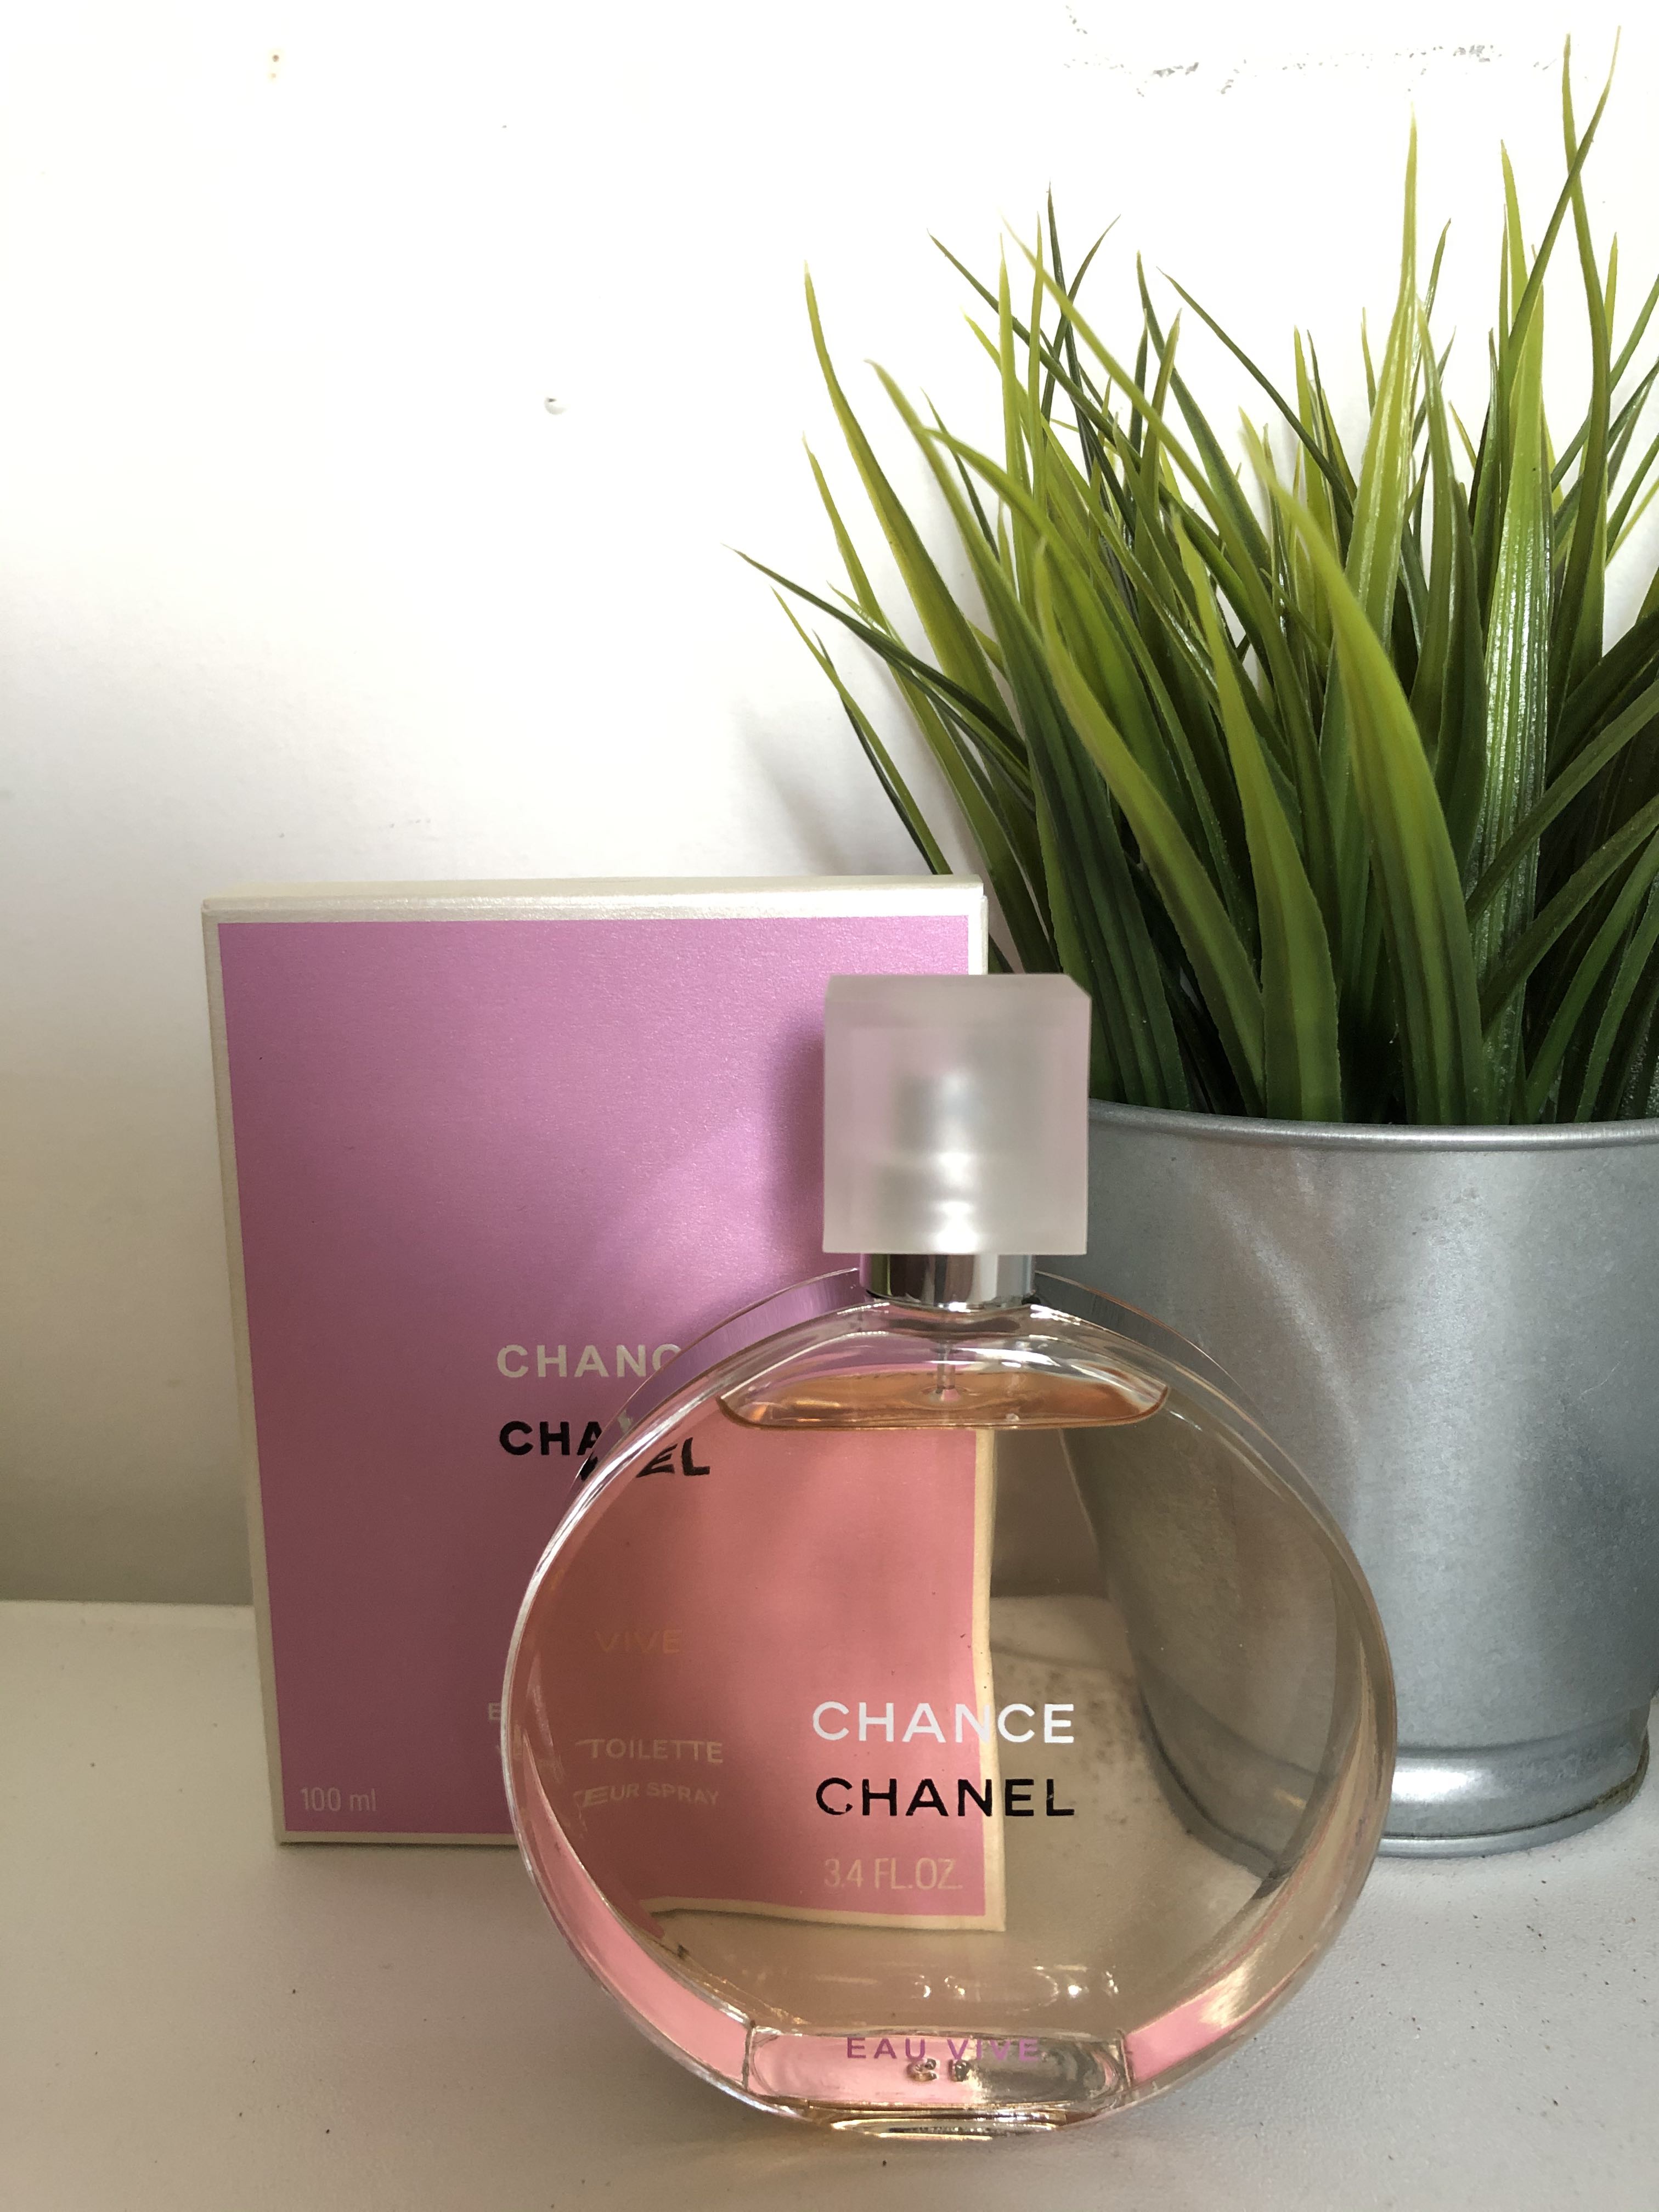 CHANEL Chance Eau Vive Linh Perfume